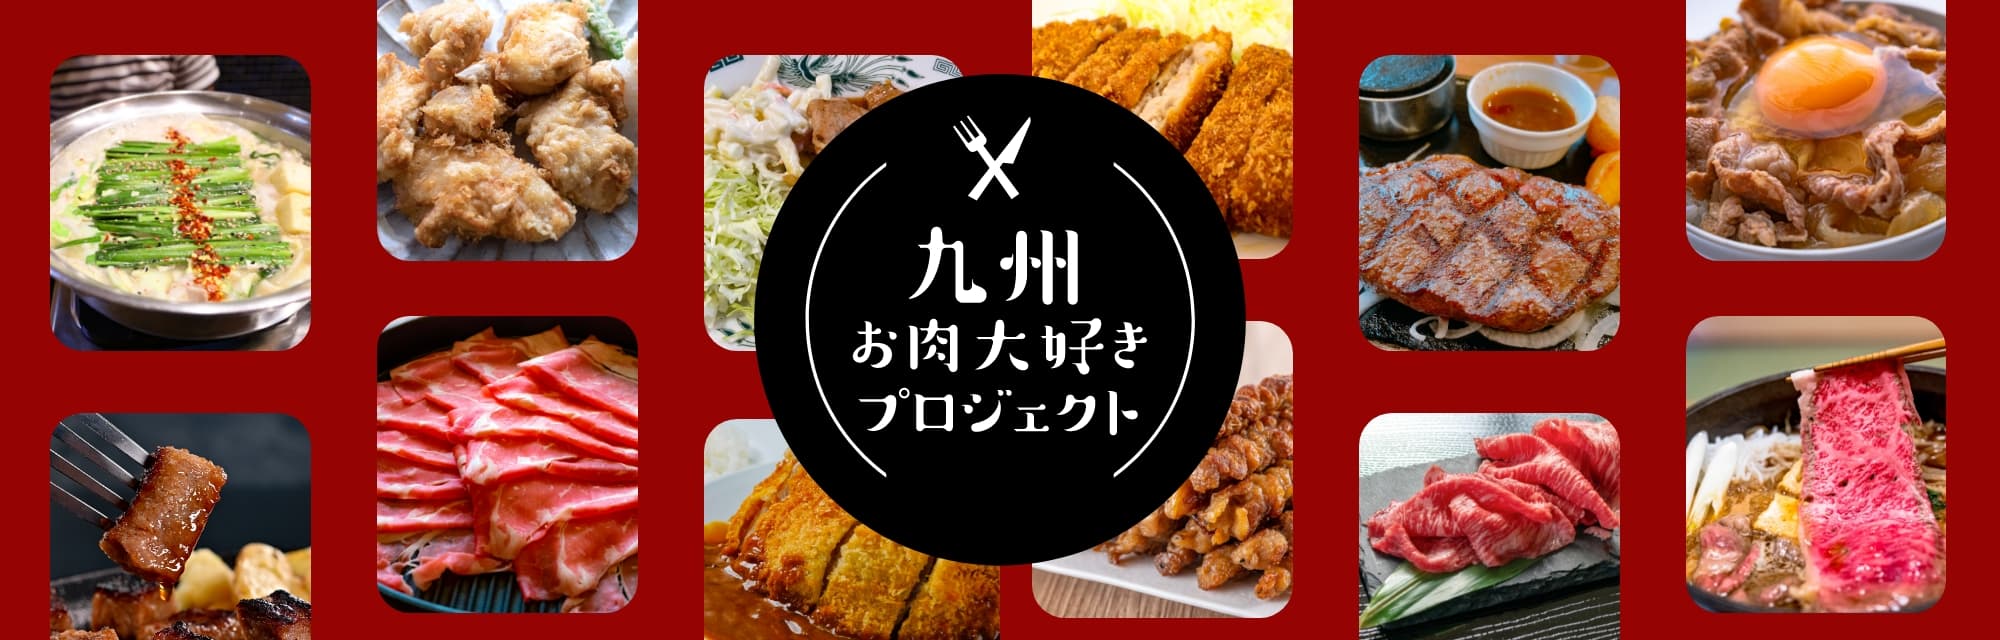 にっくん 九州 肉大好きプロジェクト